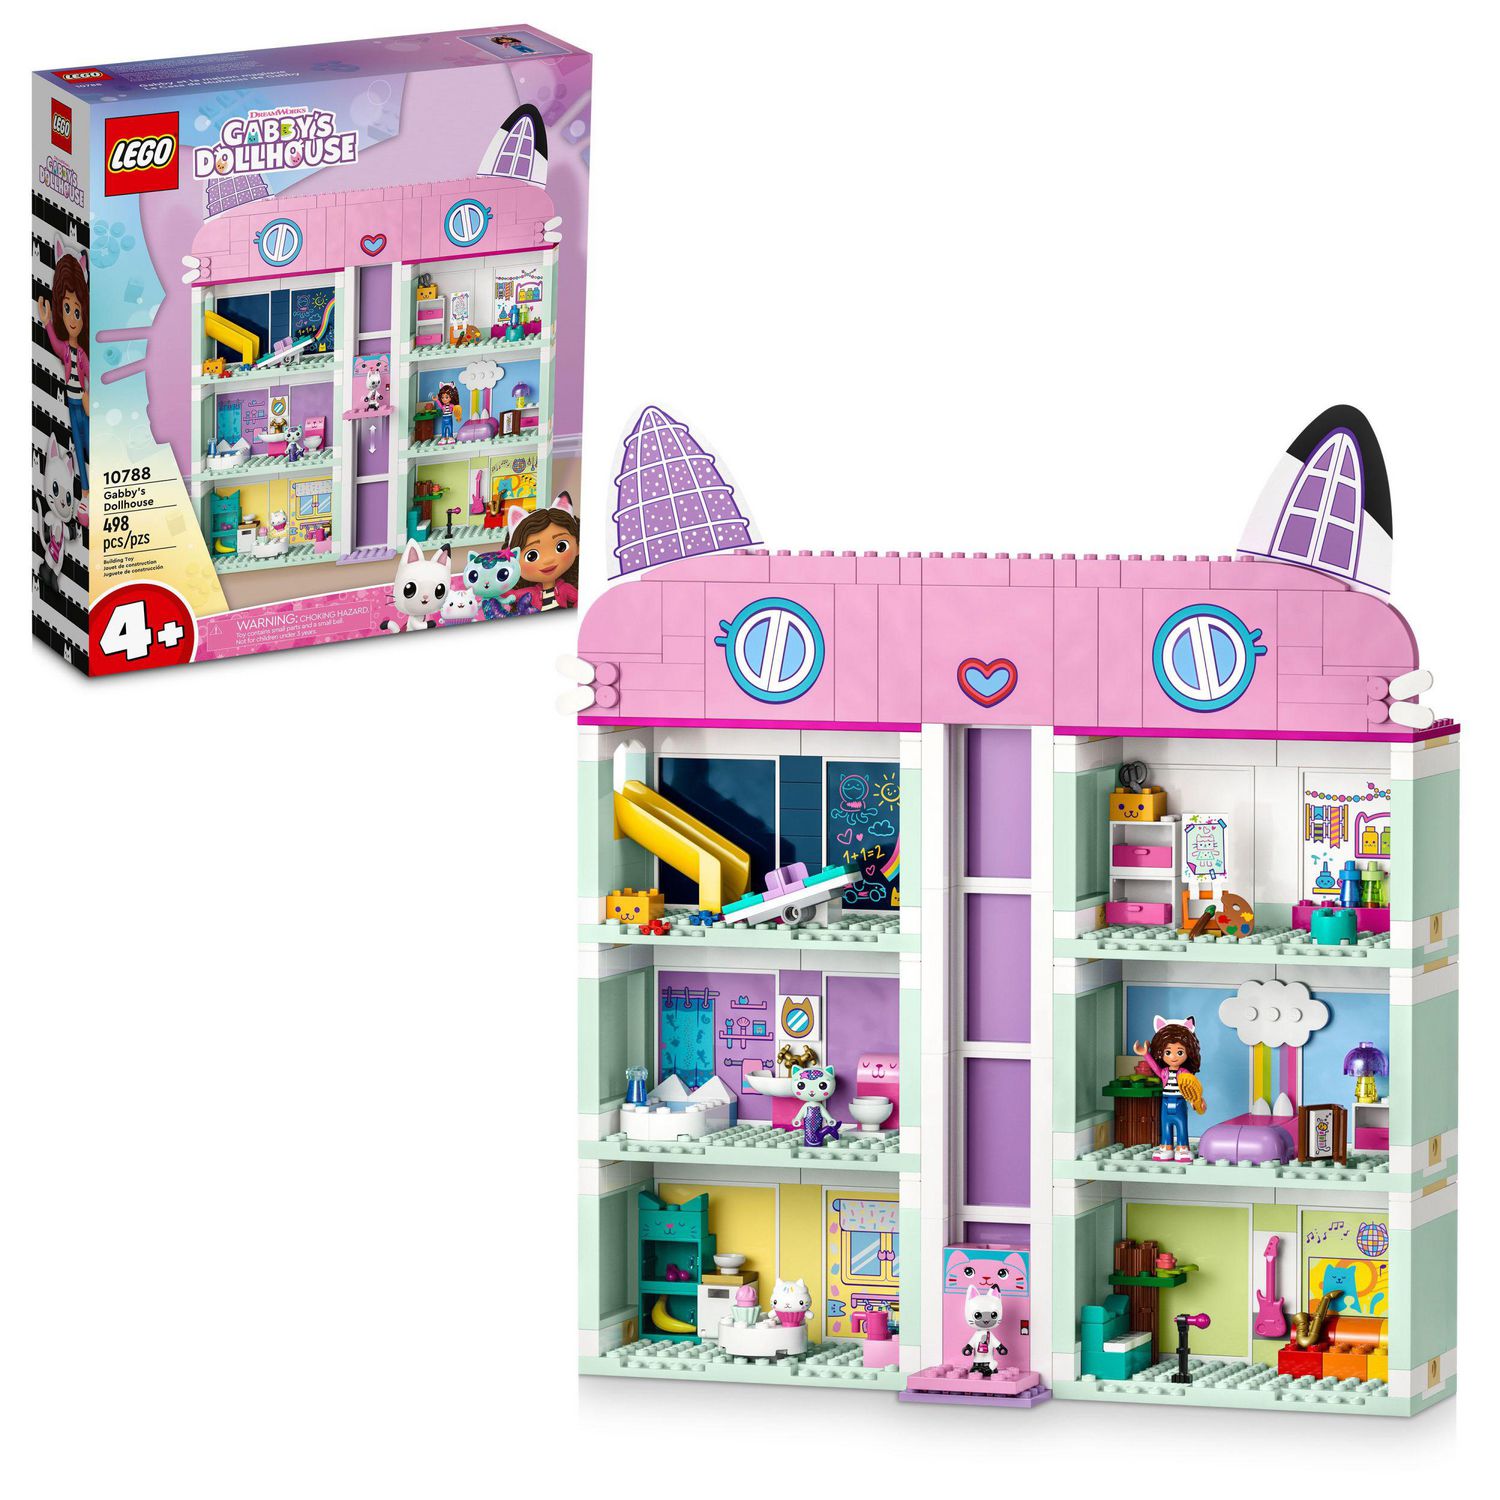 LEGO Gabby's Dollhouse 10788 Building Toy Set, An 8-Room Playhouse